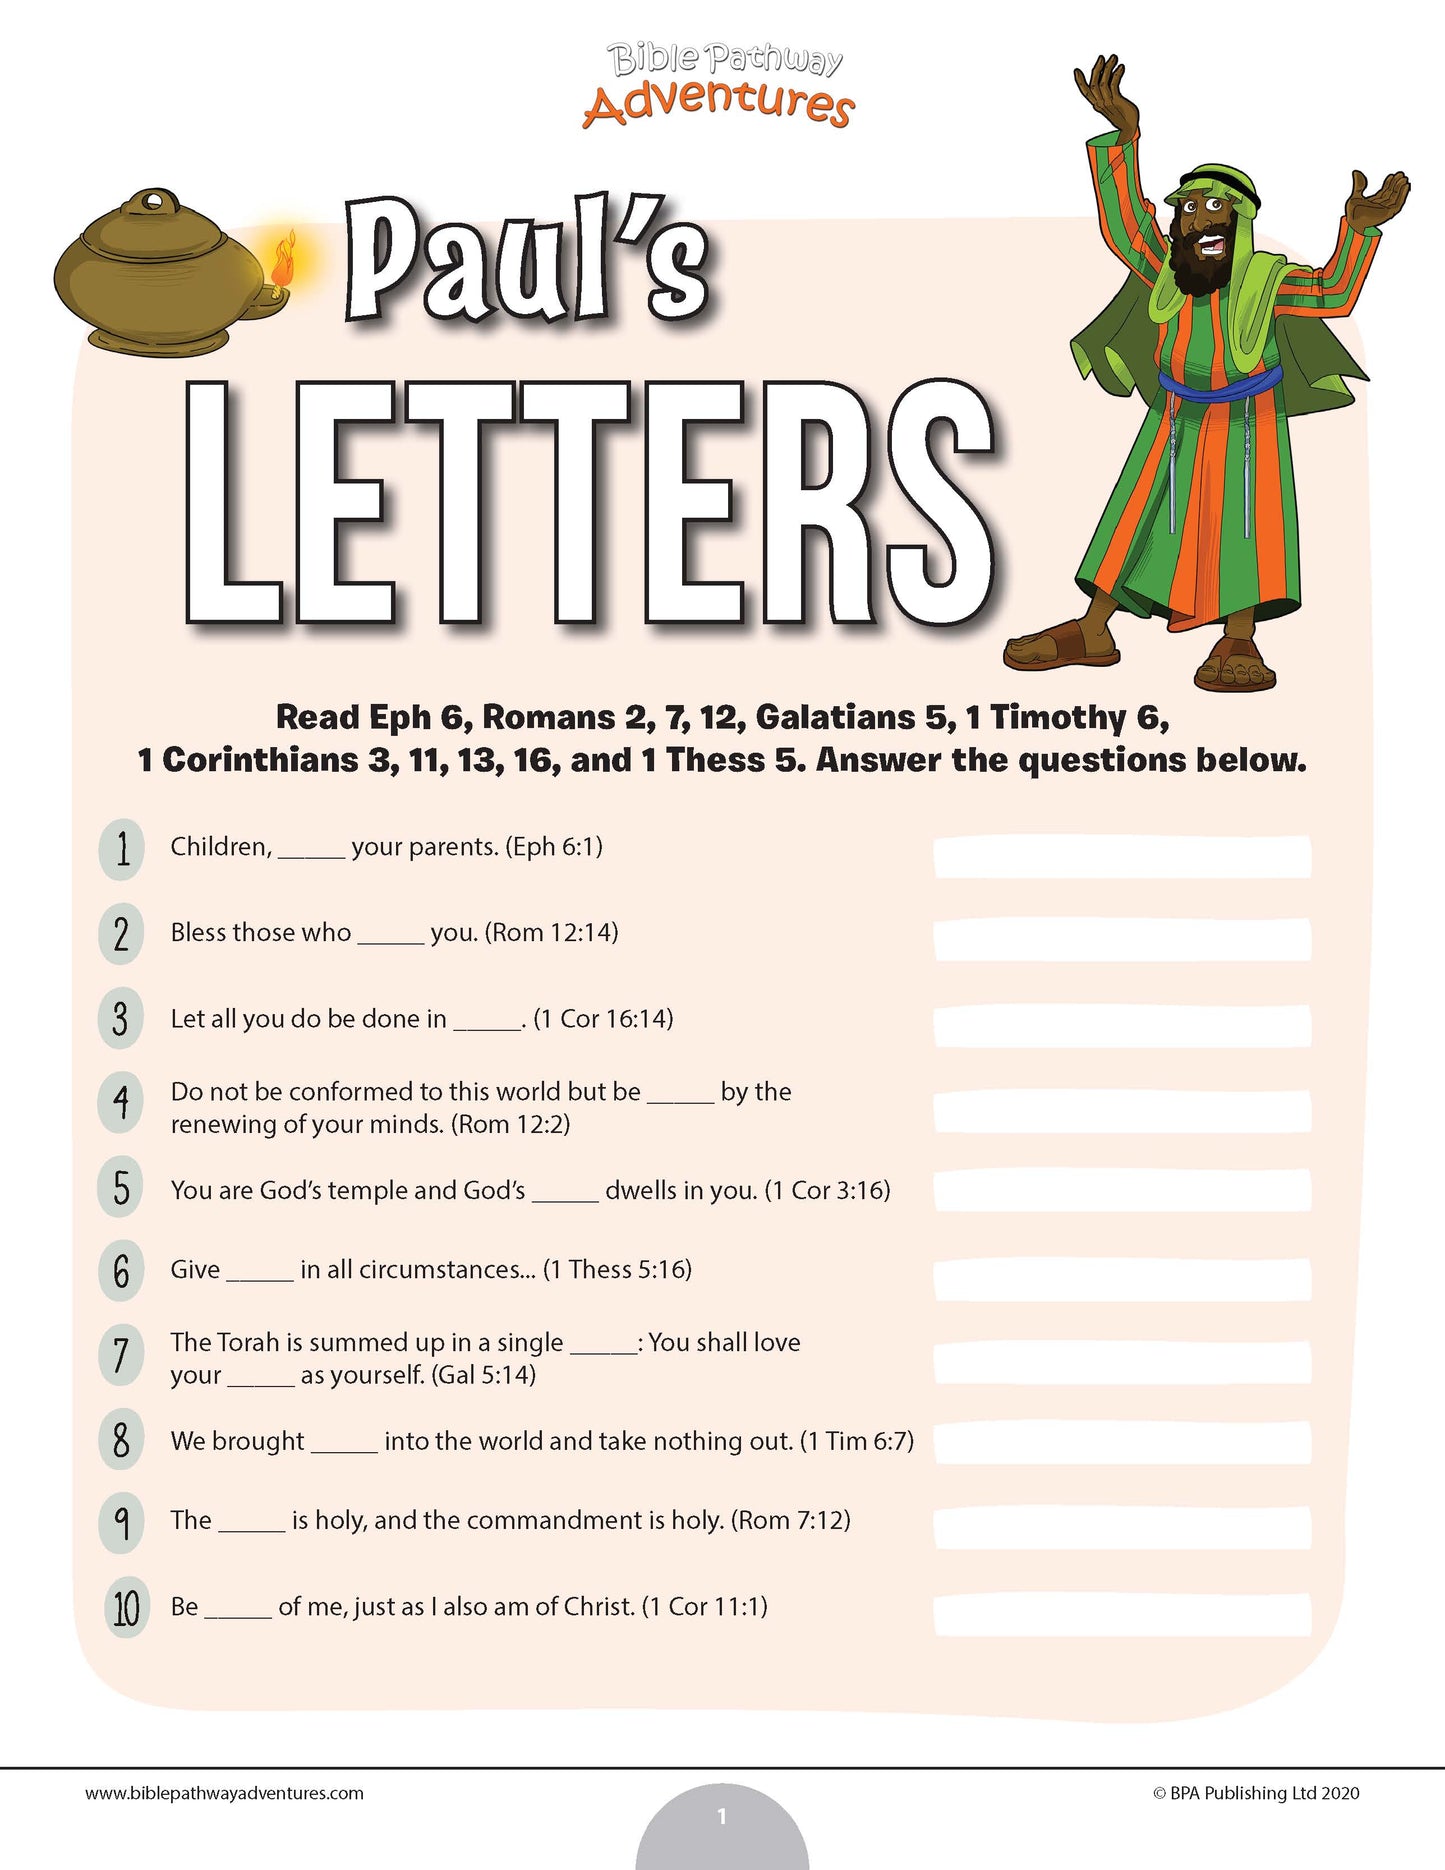 Paul’s Letters quiz